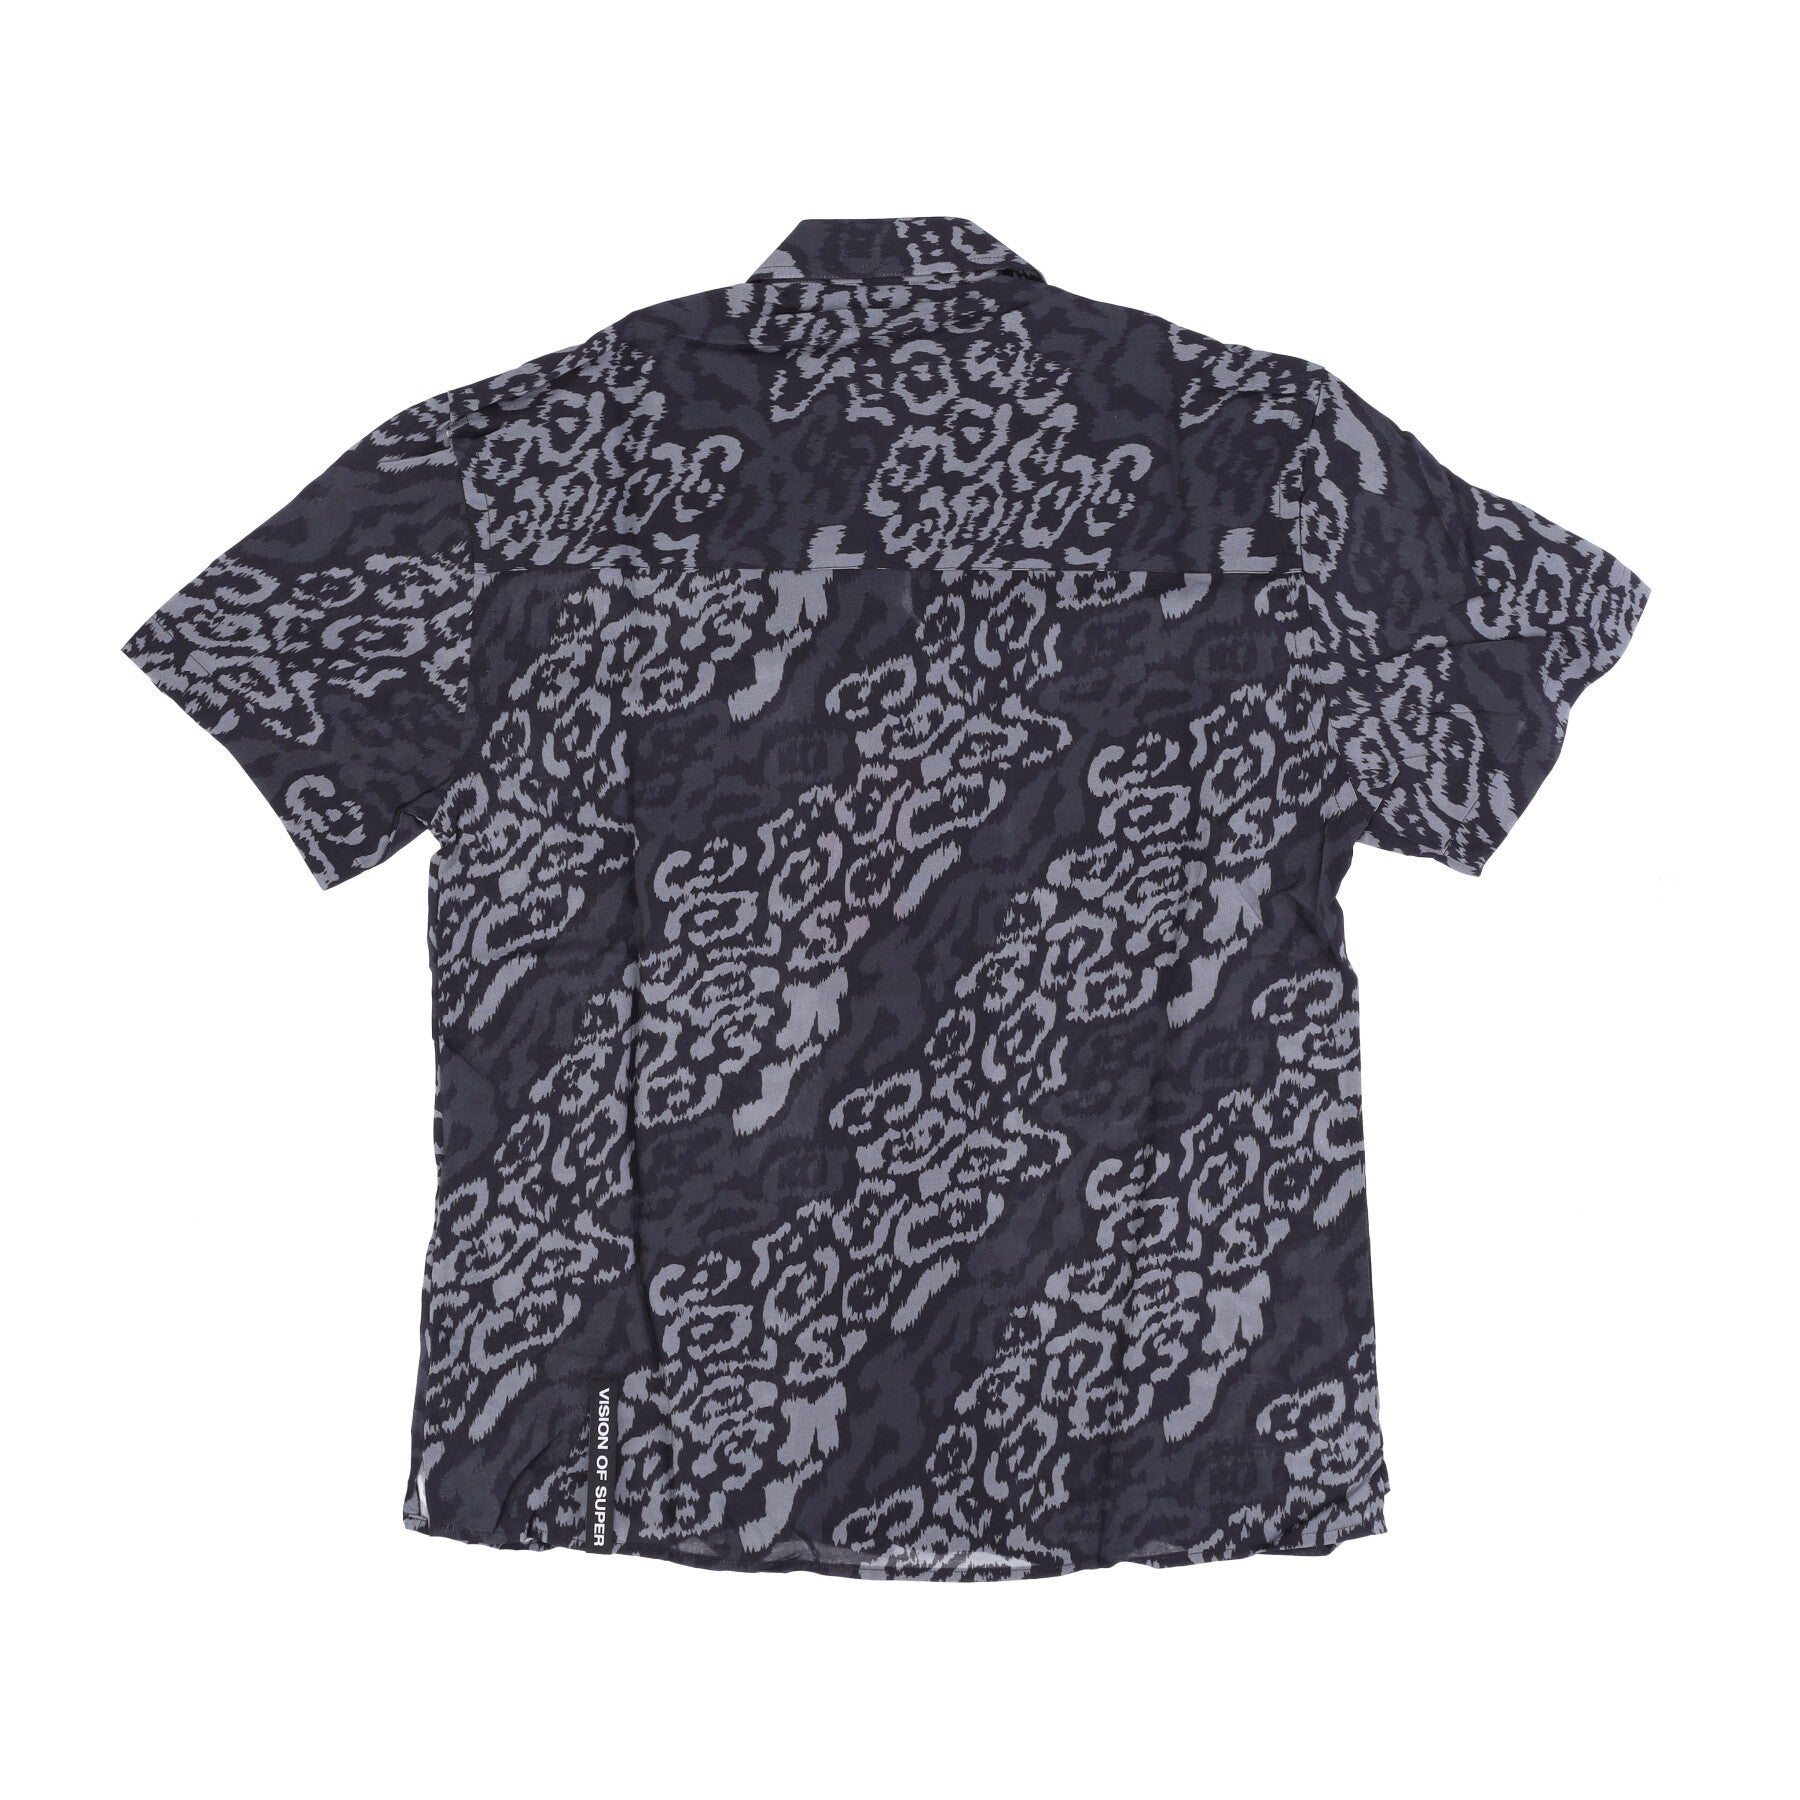 Vision Of Super, Camicia Manica Corta Uomo Allover Leopard Shirt, 